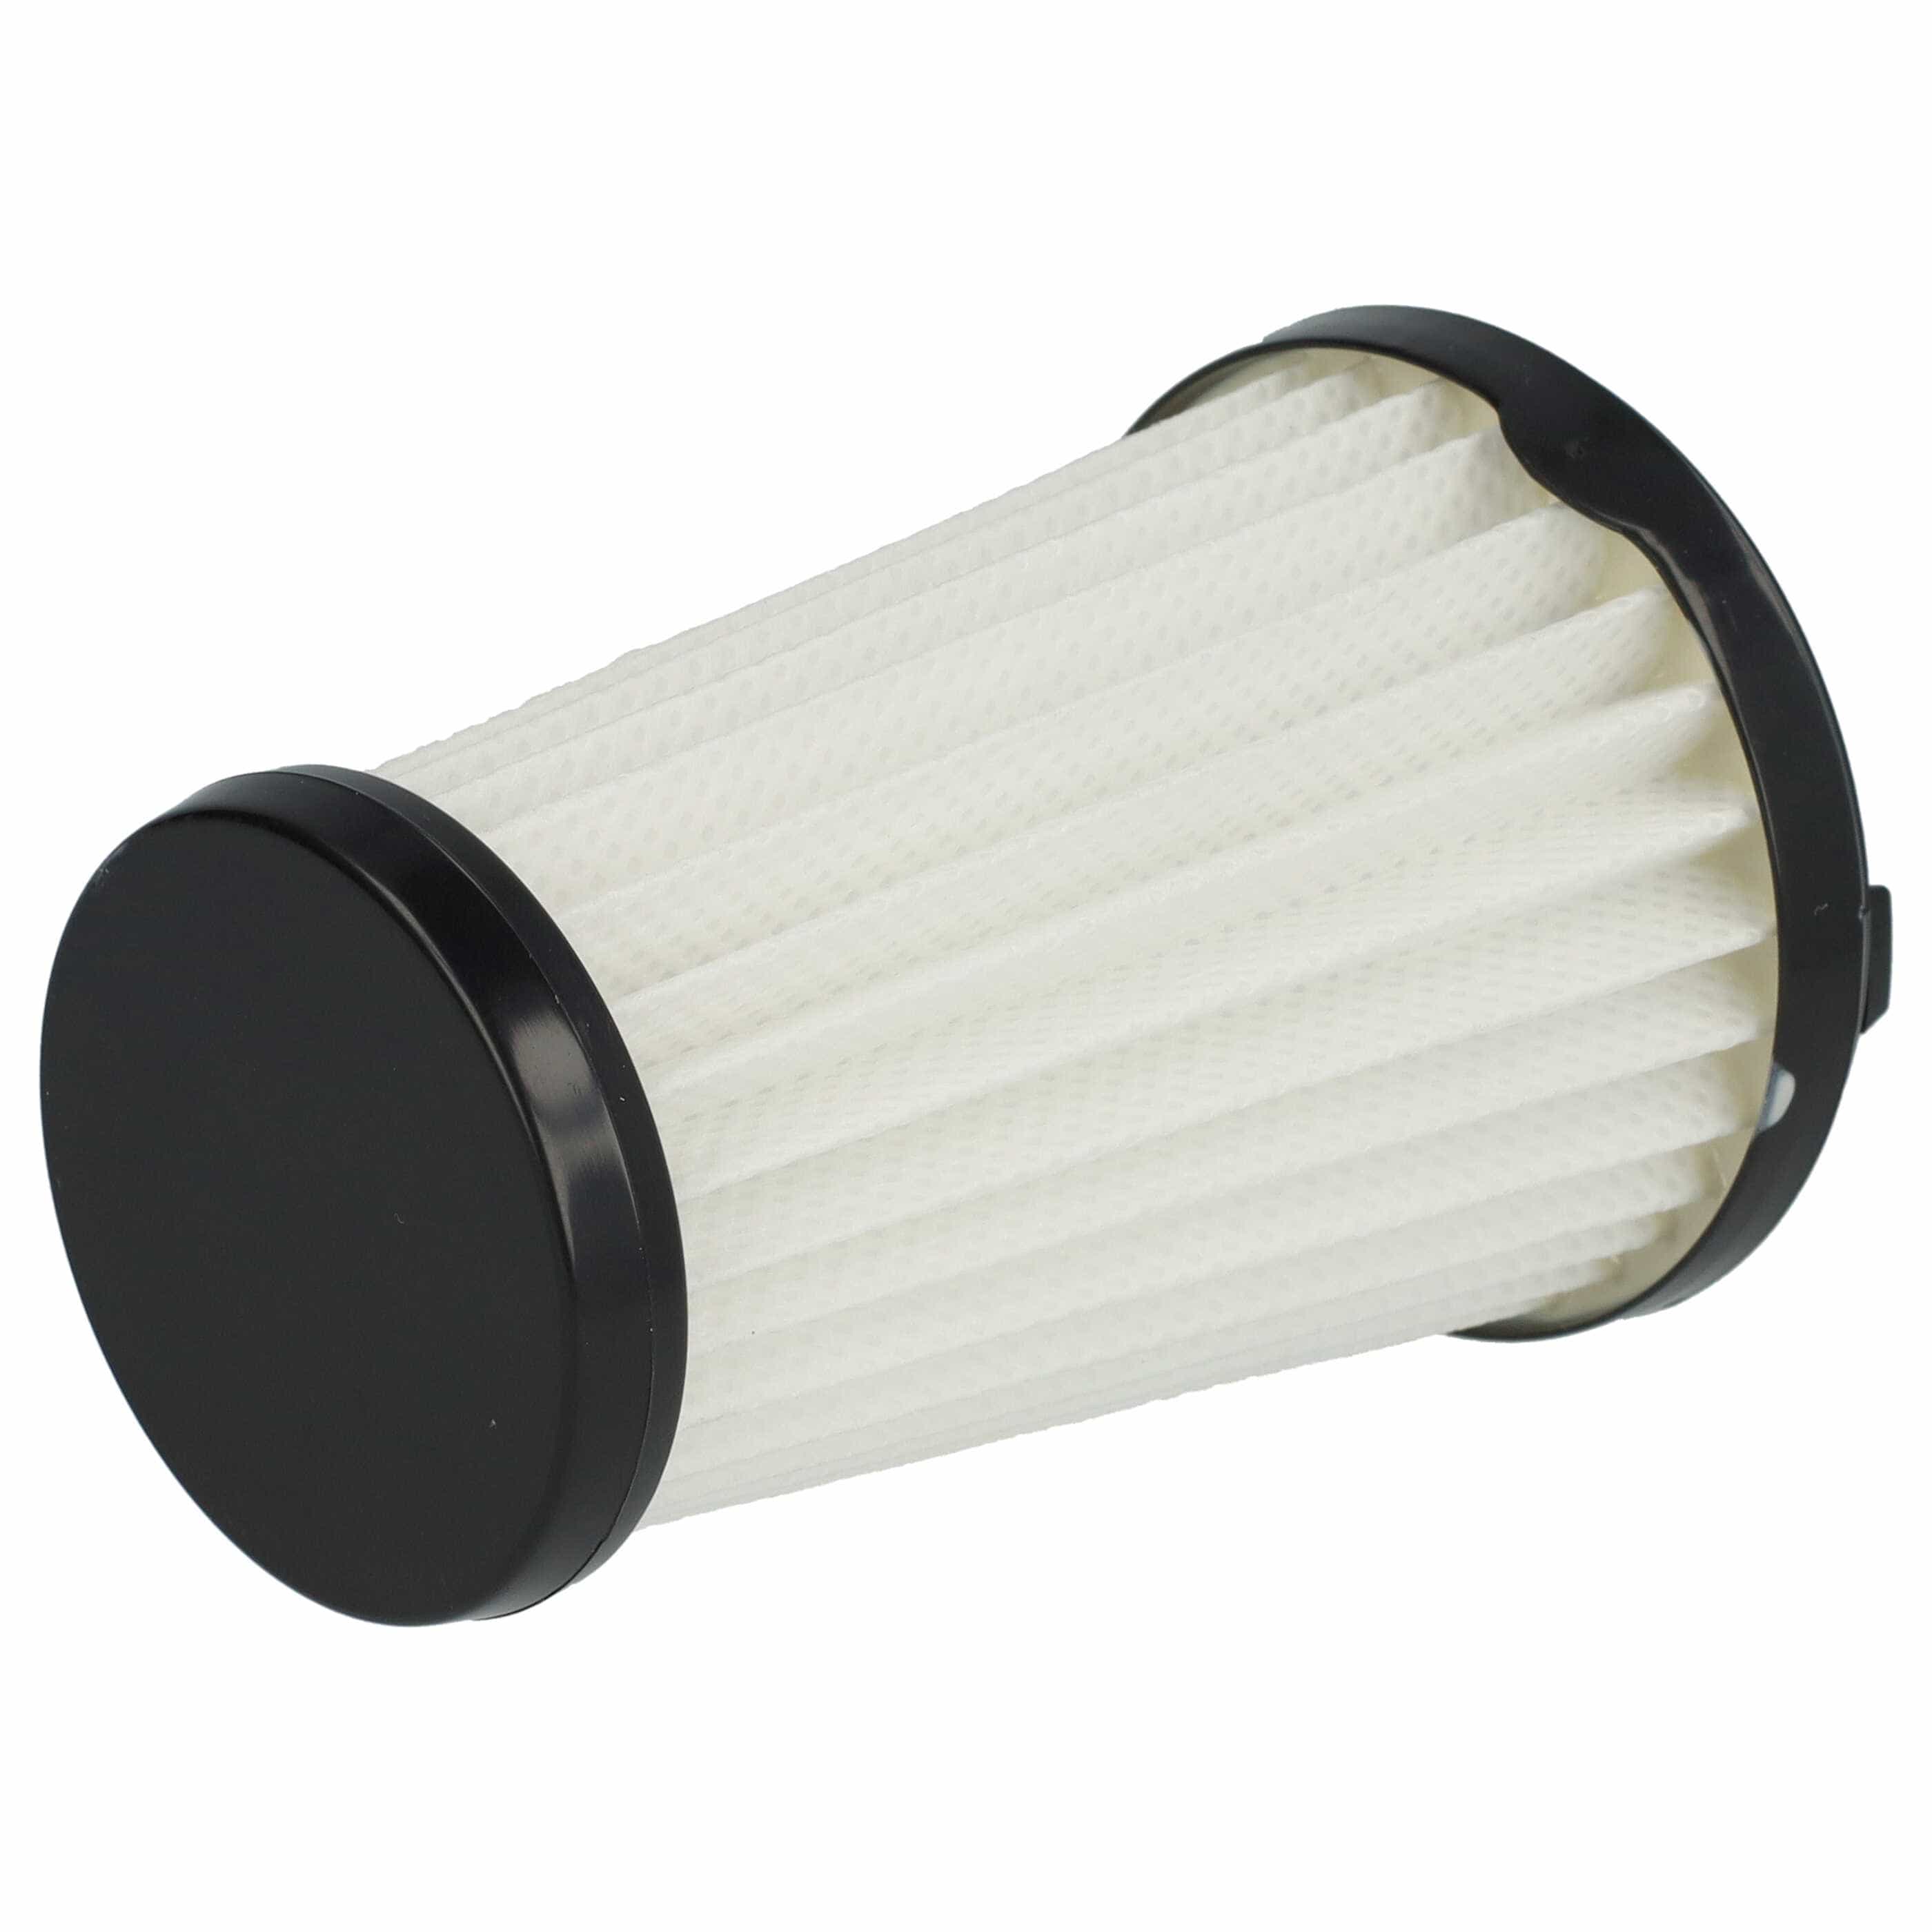 Filtr do odkurzacza Electrolux zamiennik AEG AEF150, 9001683755, 90094073100 - filtr lamelowy, czarny / biały